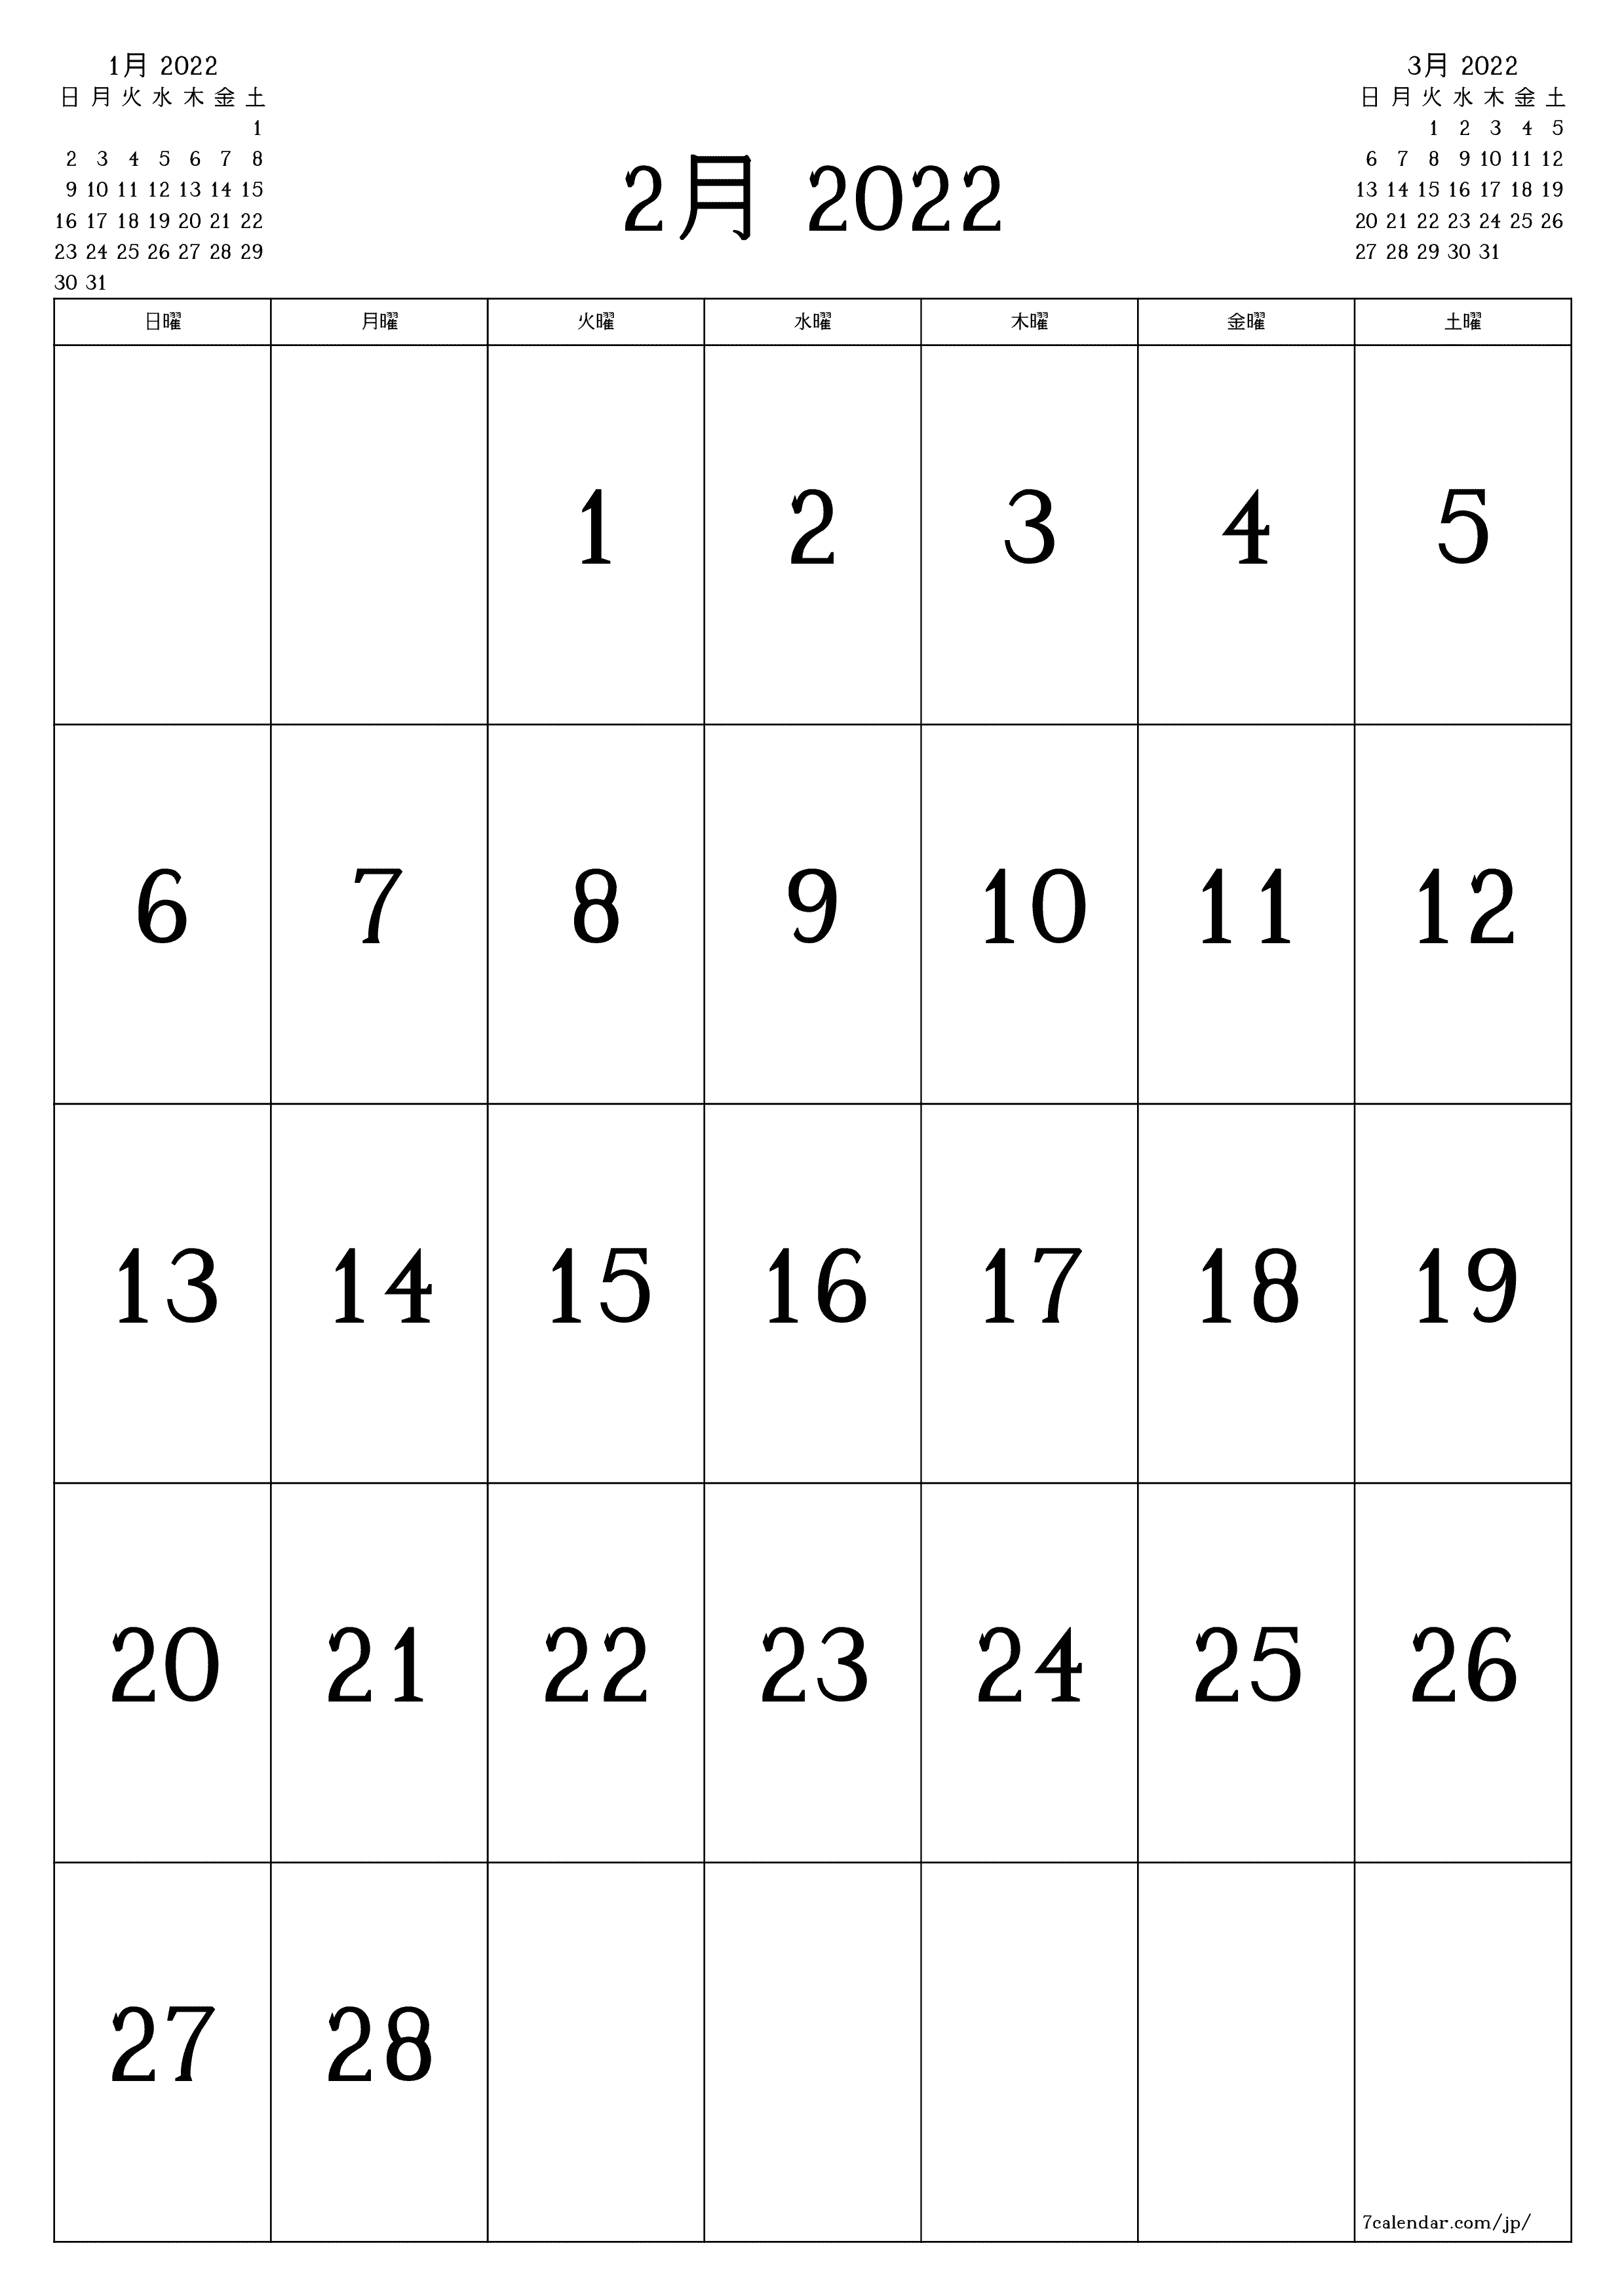 月の空白の月間カレンダー2月2022保存してPDFに印刷PNG Japanese - 7calendar.com